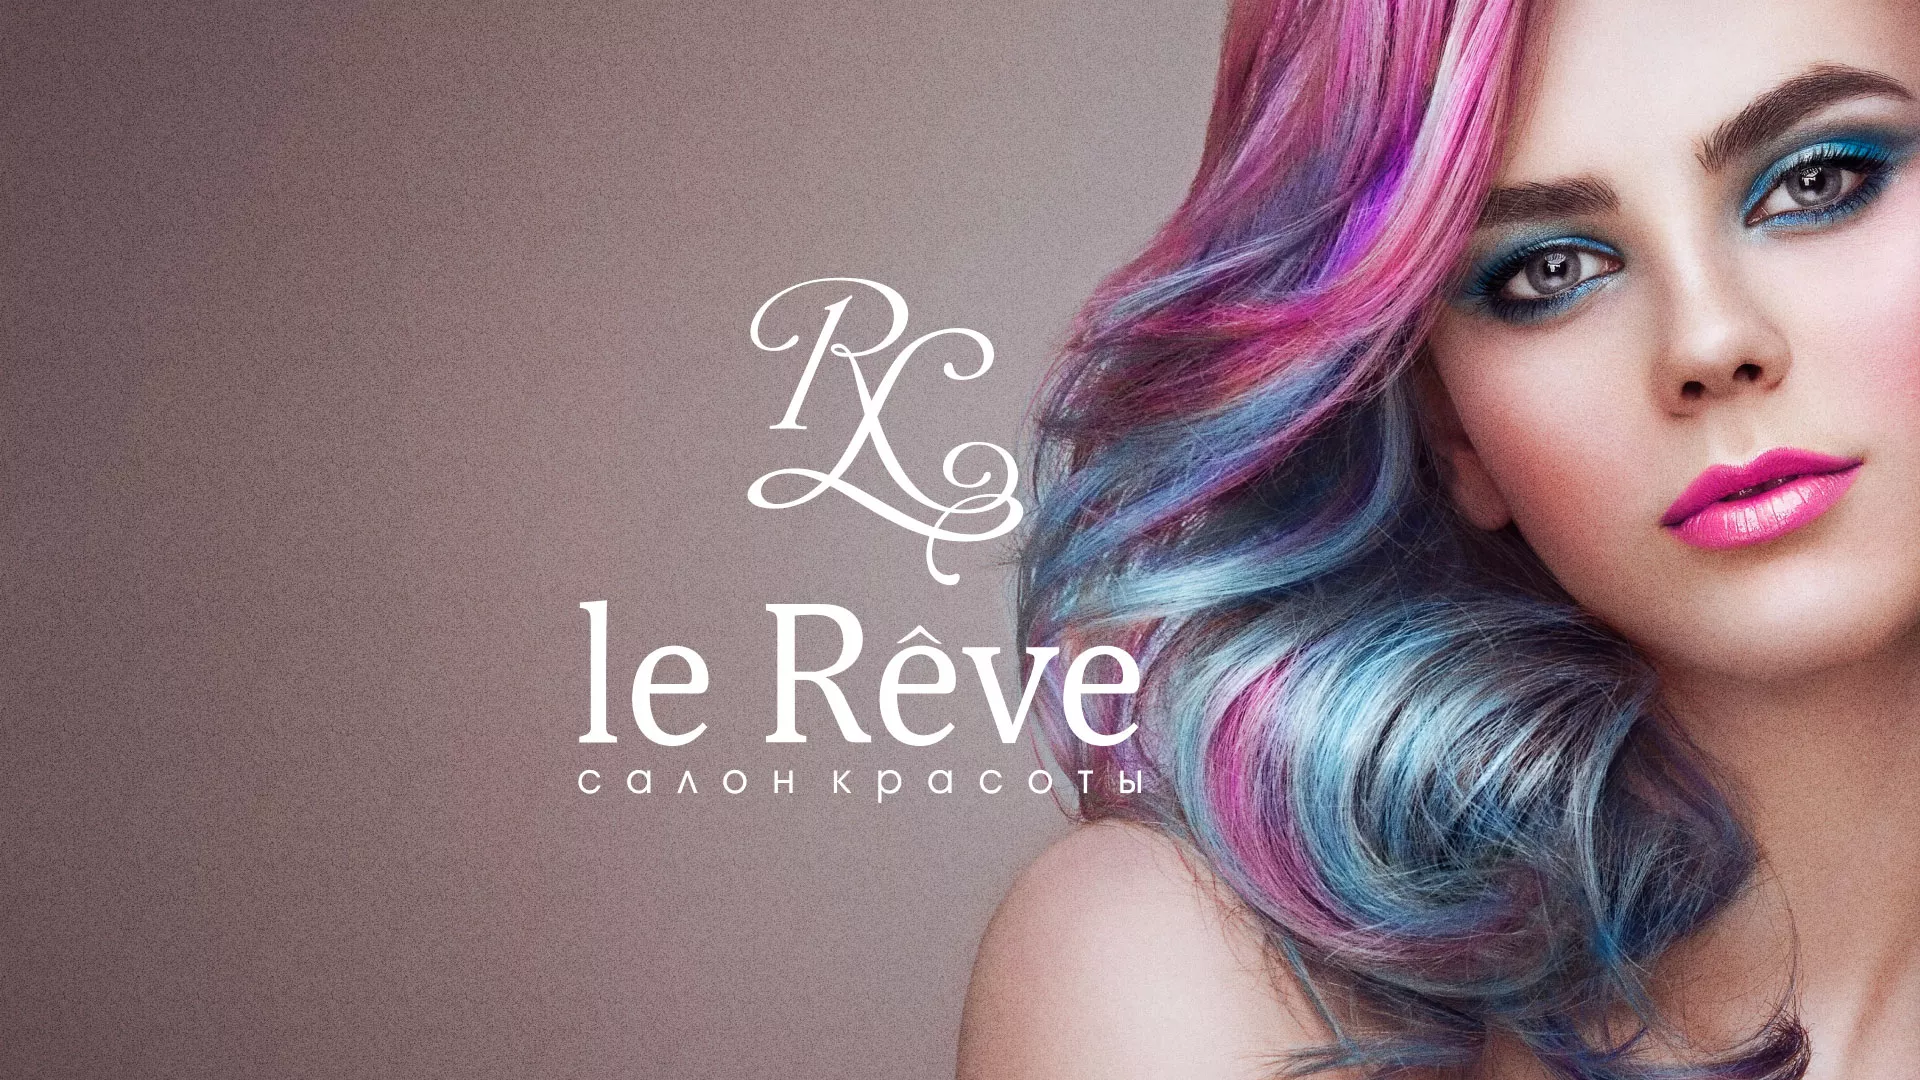 Создание сайта для салона красоты «Le Reve» в Кизляре